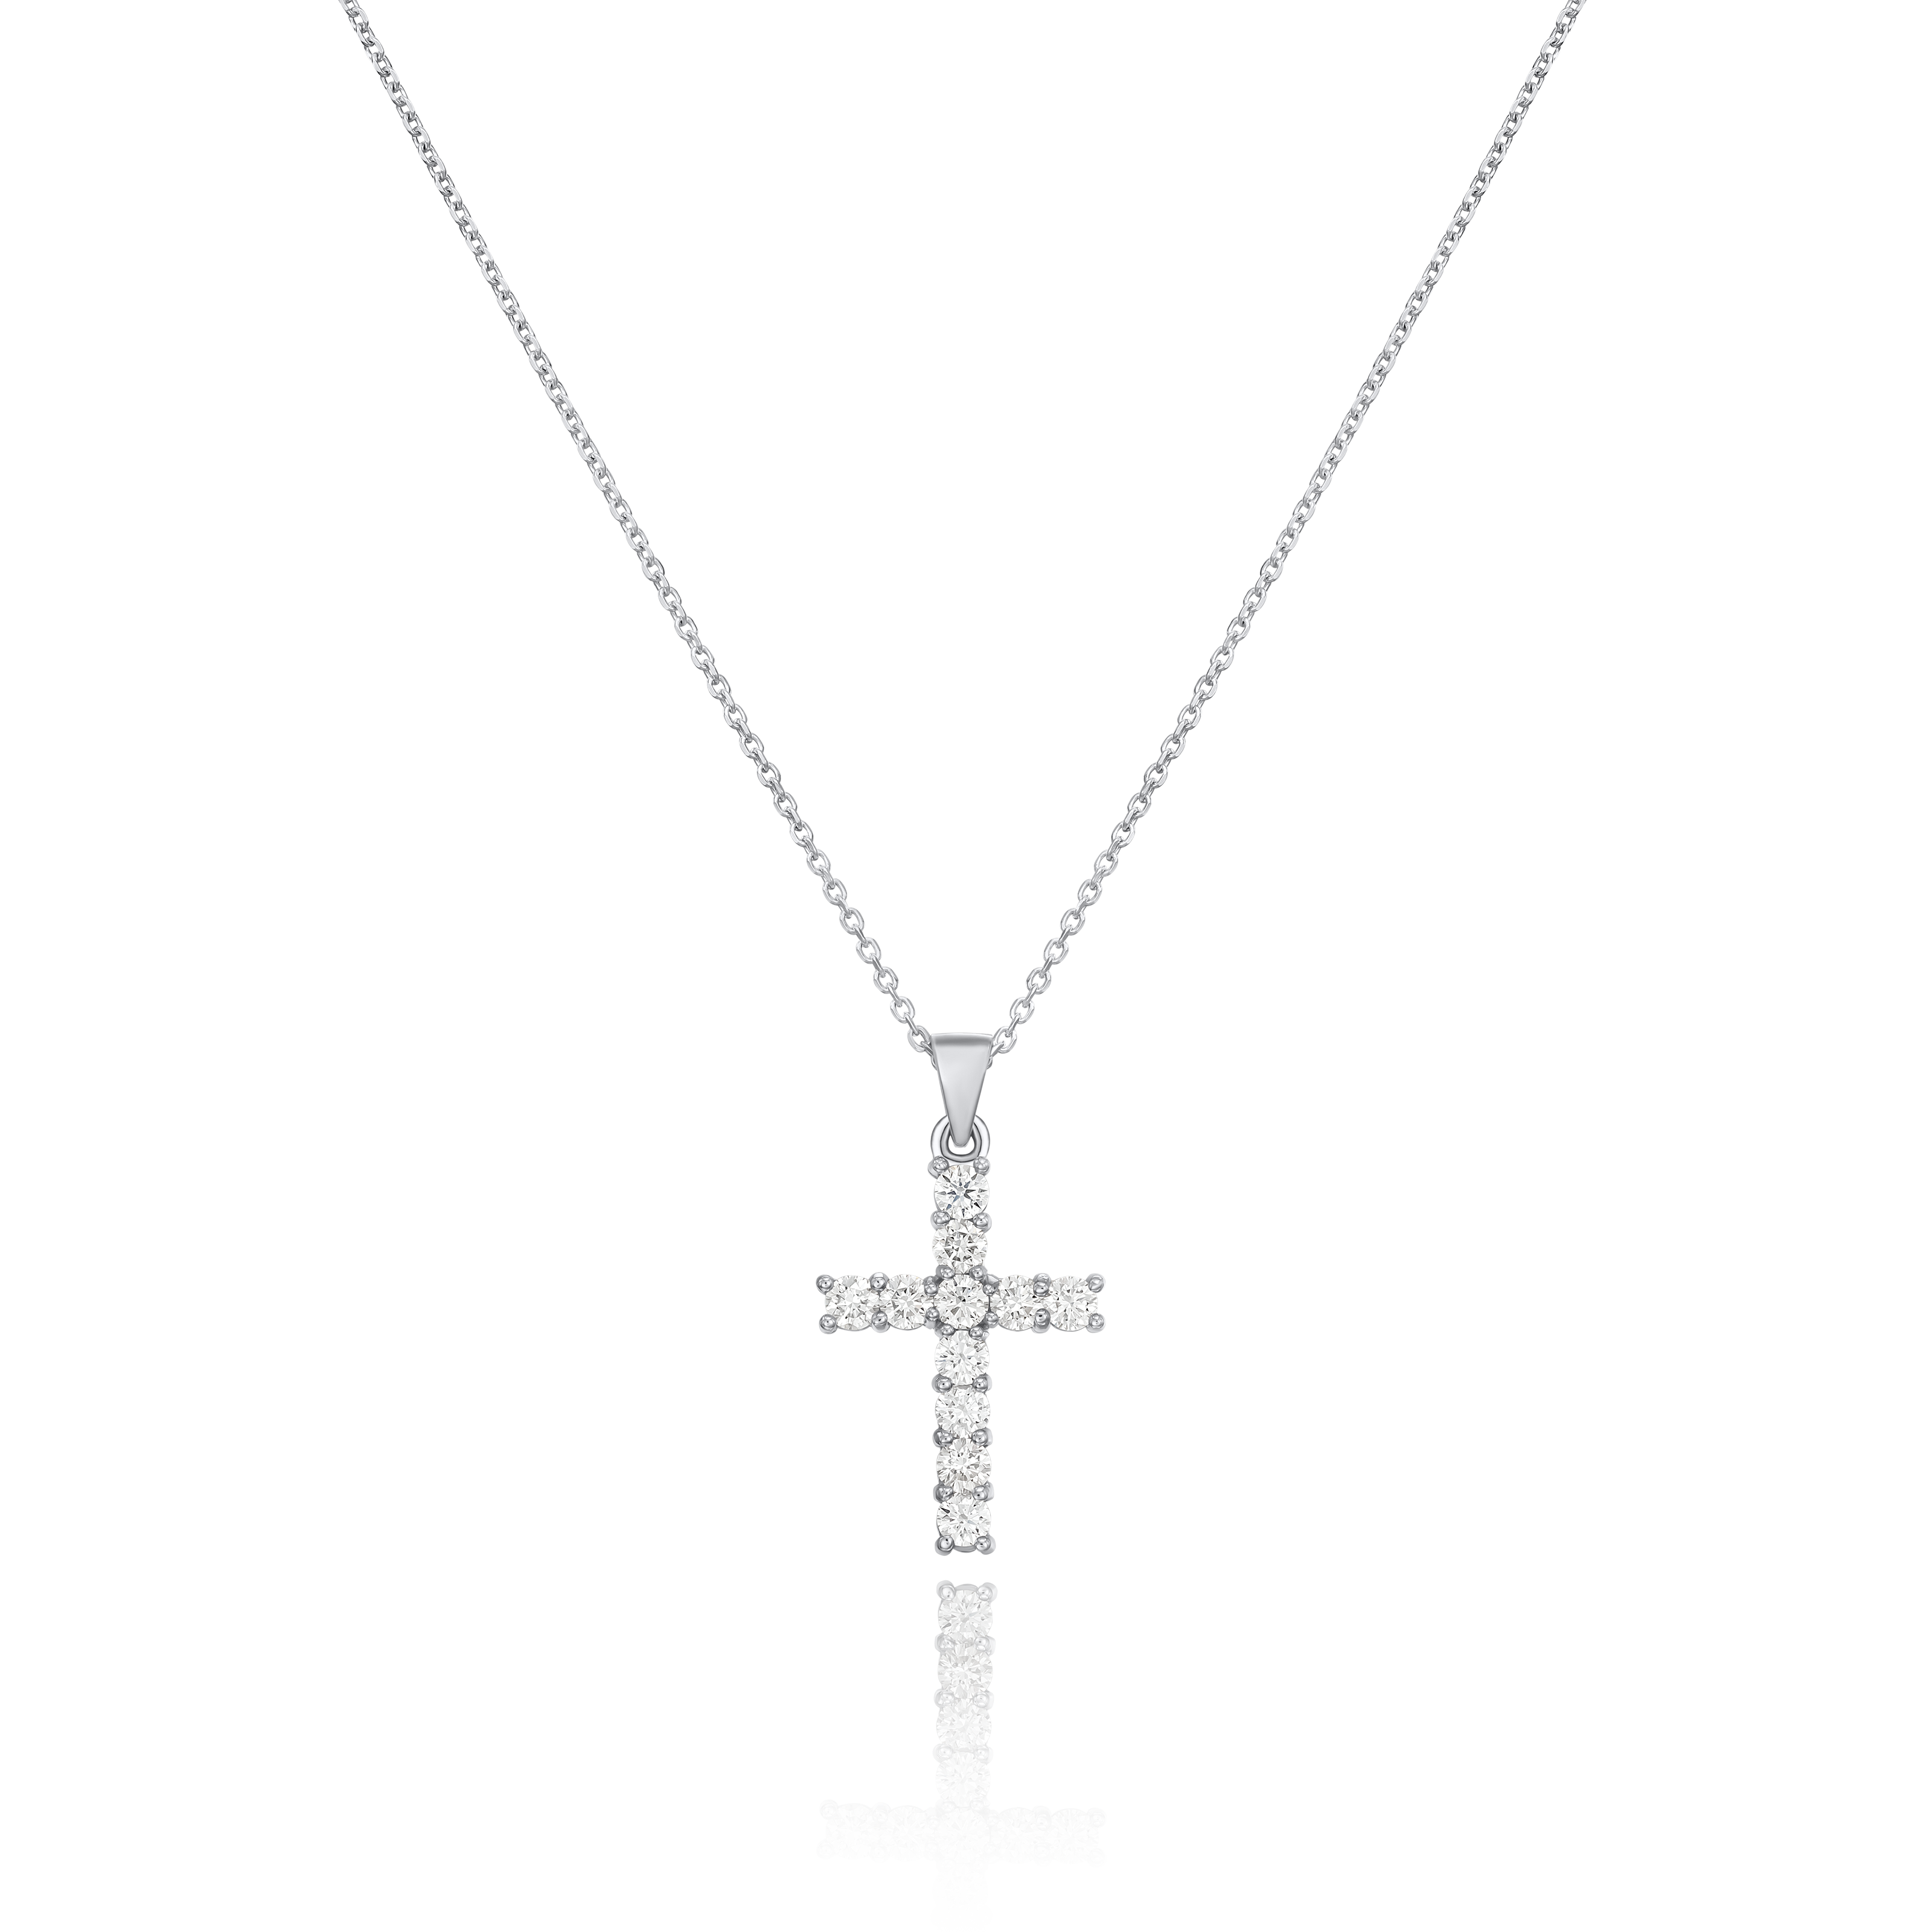 1.47cts Diamond Cross Platinum Pendant